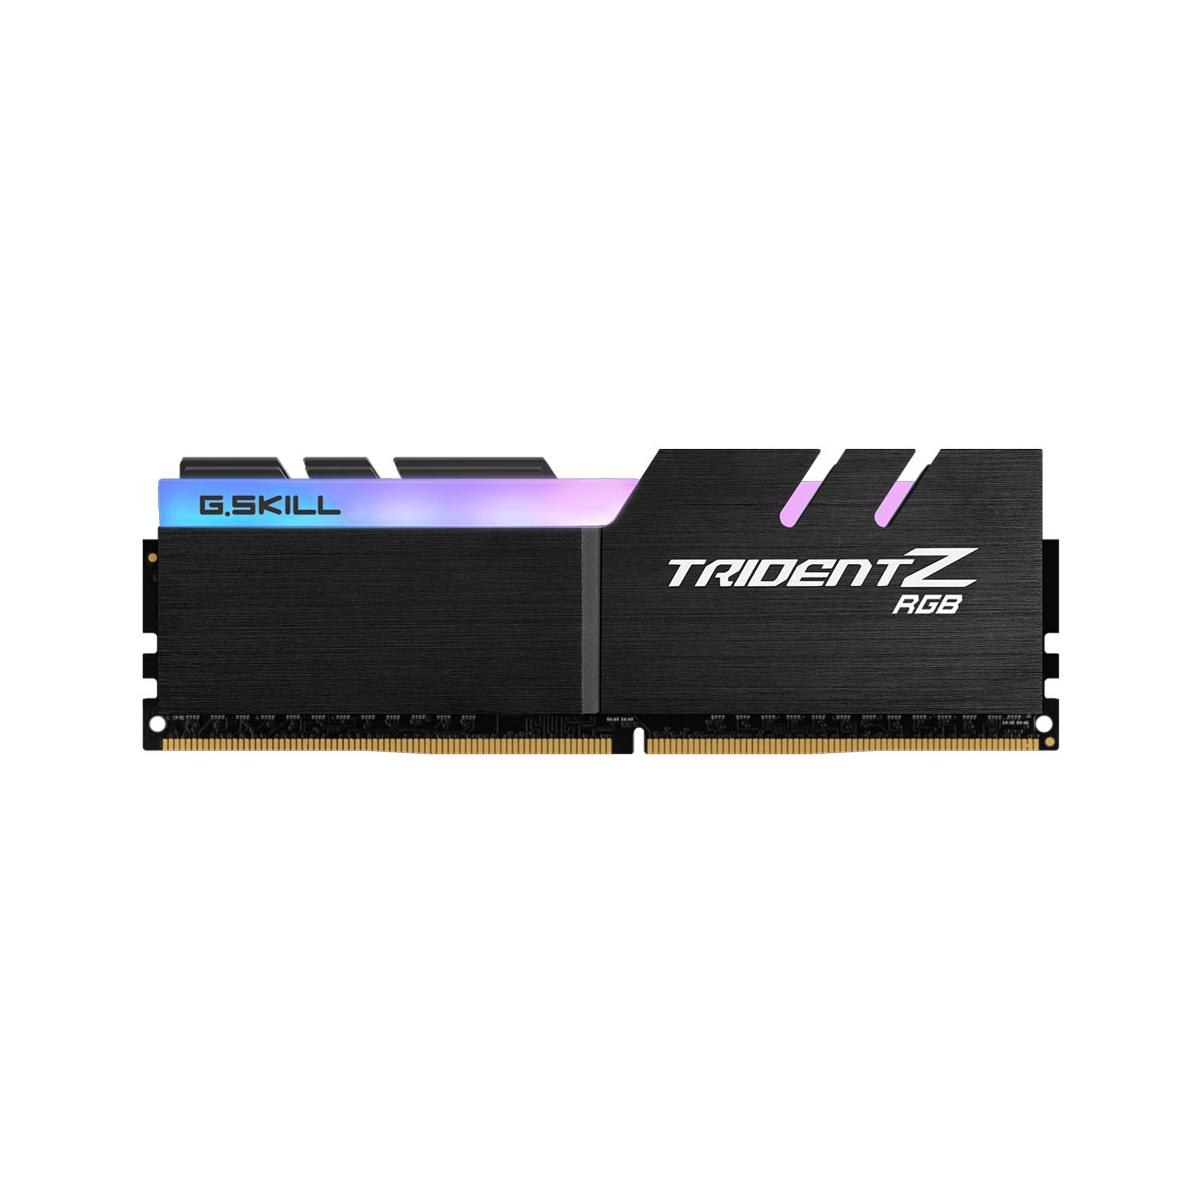 MEMORIA DIMM DDR4 G.SKILL (F4-3200C16S-8GTZR) 8GB(1X8GB) 3200MHZ, TRIDENT Z RGB - F4-3200C16S-8GTZR